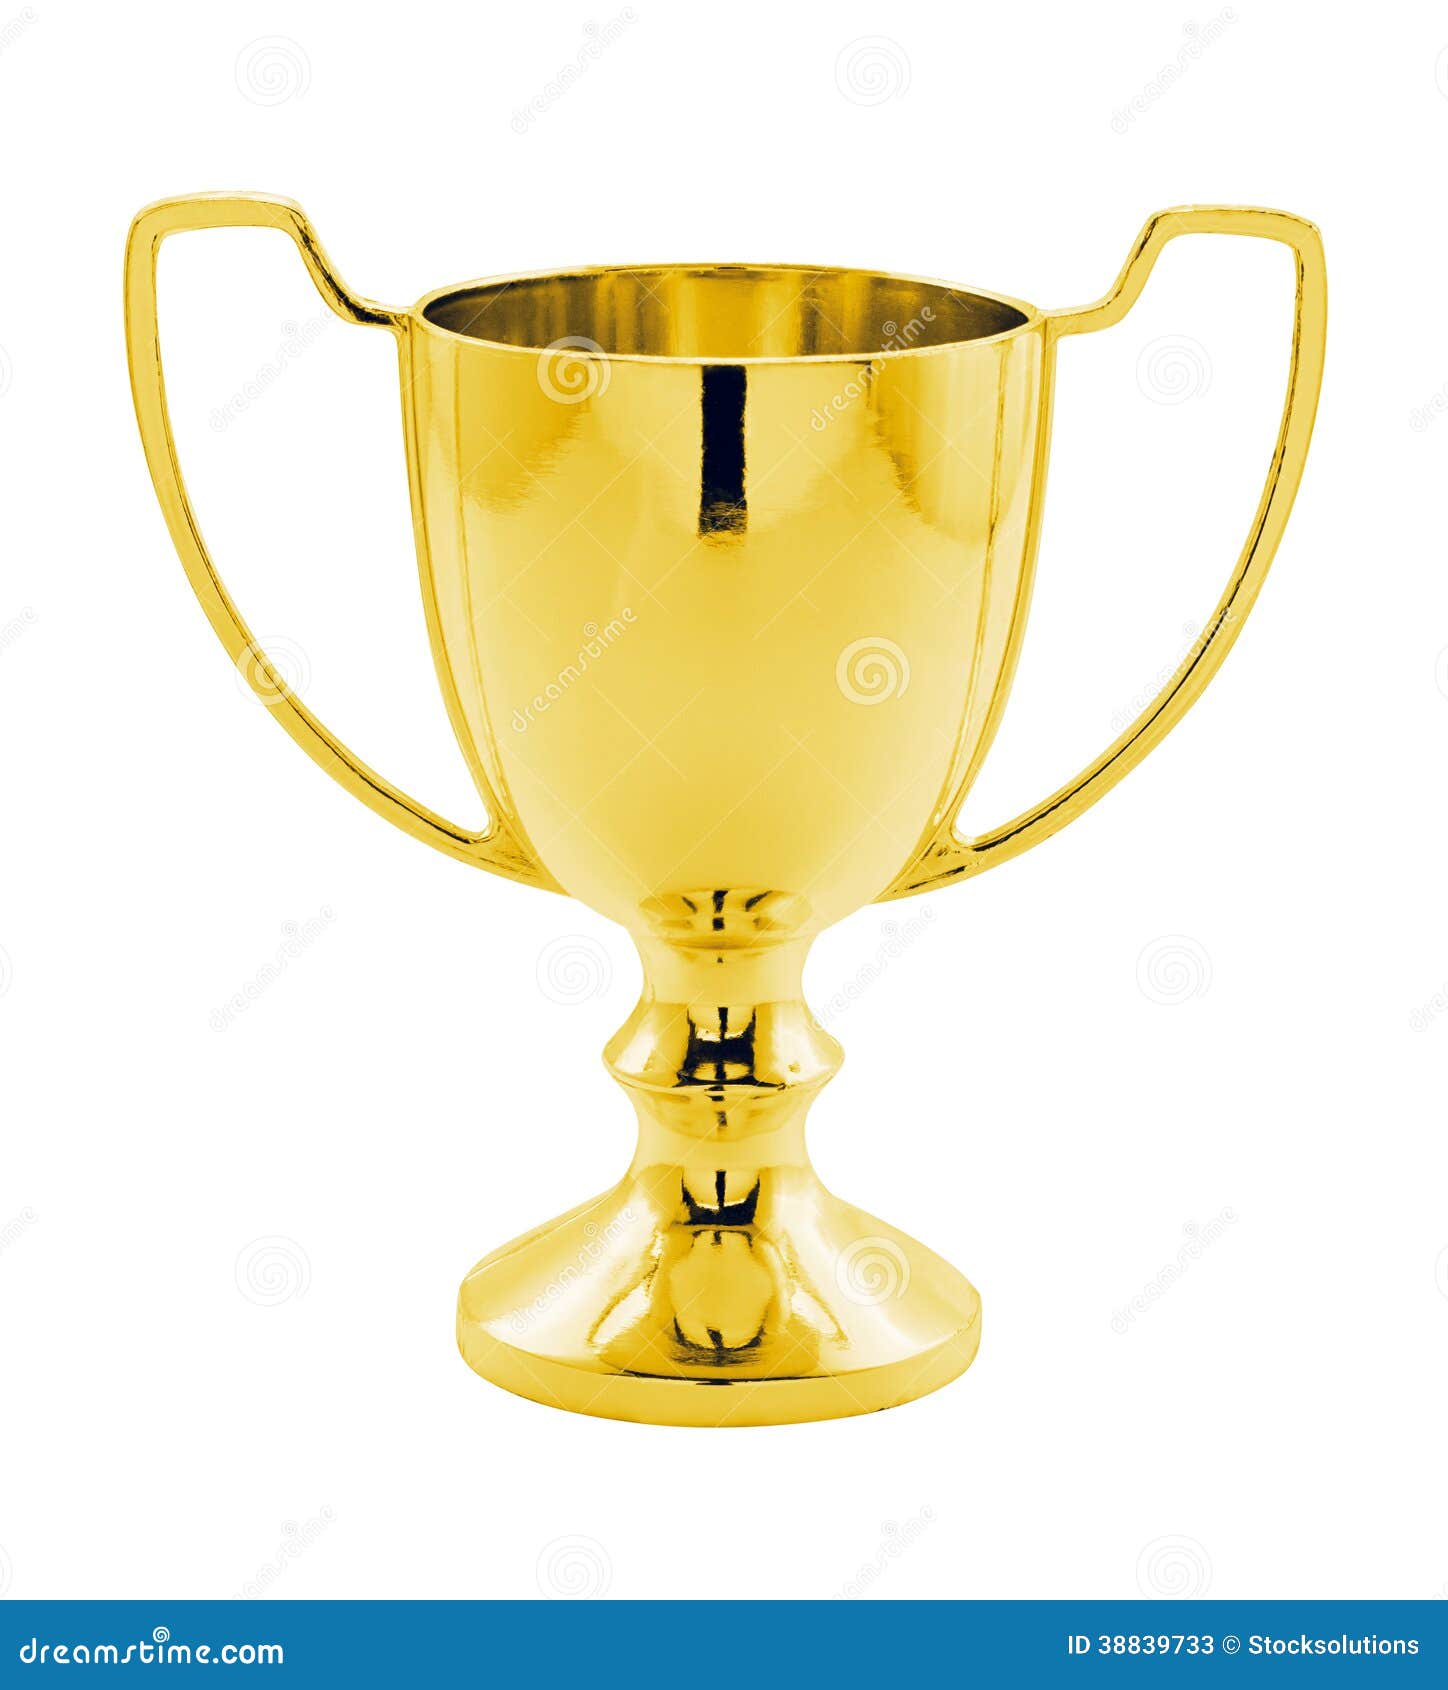 gold winners trophy 